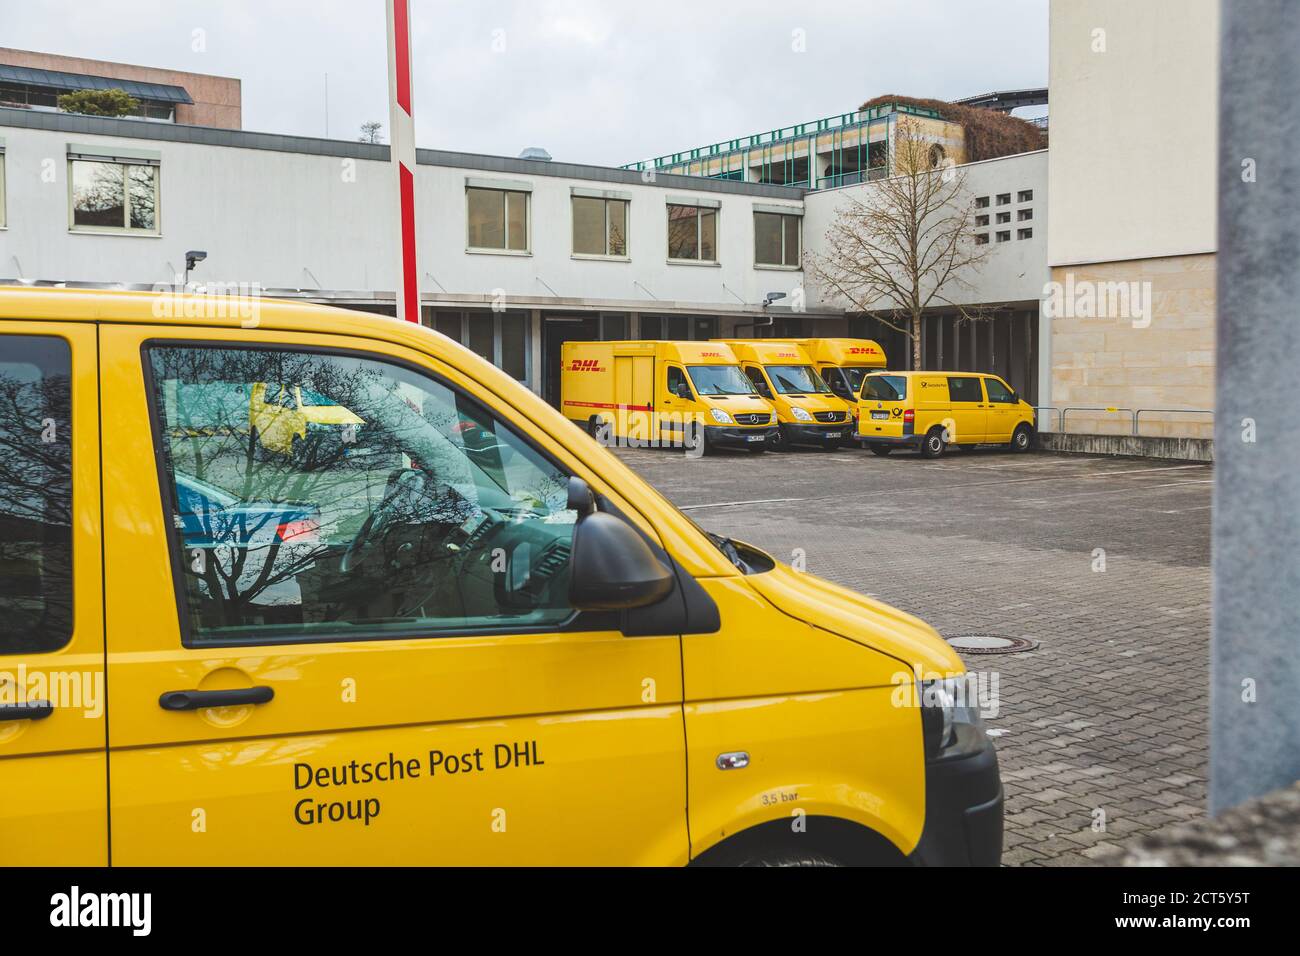 Bad Kissingen/Deutschland-31/12/18: Deutsche Post DHL Group Fuhrpark auf  einem Parkplatz in der Nähe der Post an der Münchner Straße. Deutsche Post  DHL Group ist Th Stockfotografie - Alamy